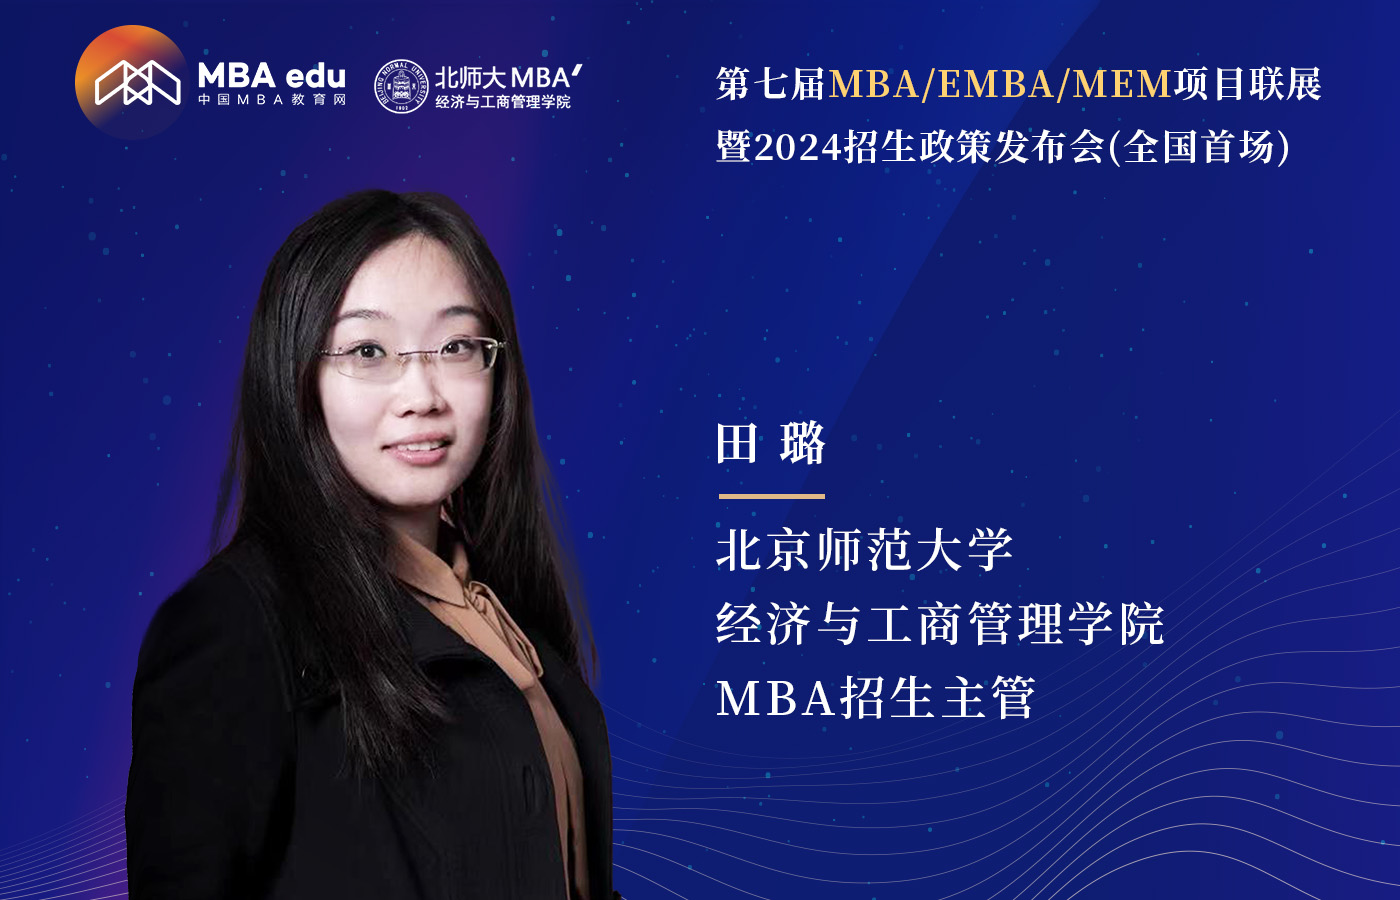 北京师范大学经济与工商管理学院MBA邀你参加第七届MBA项目联展